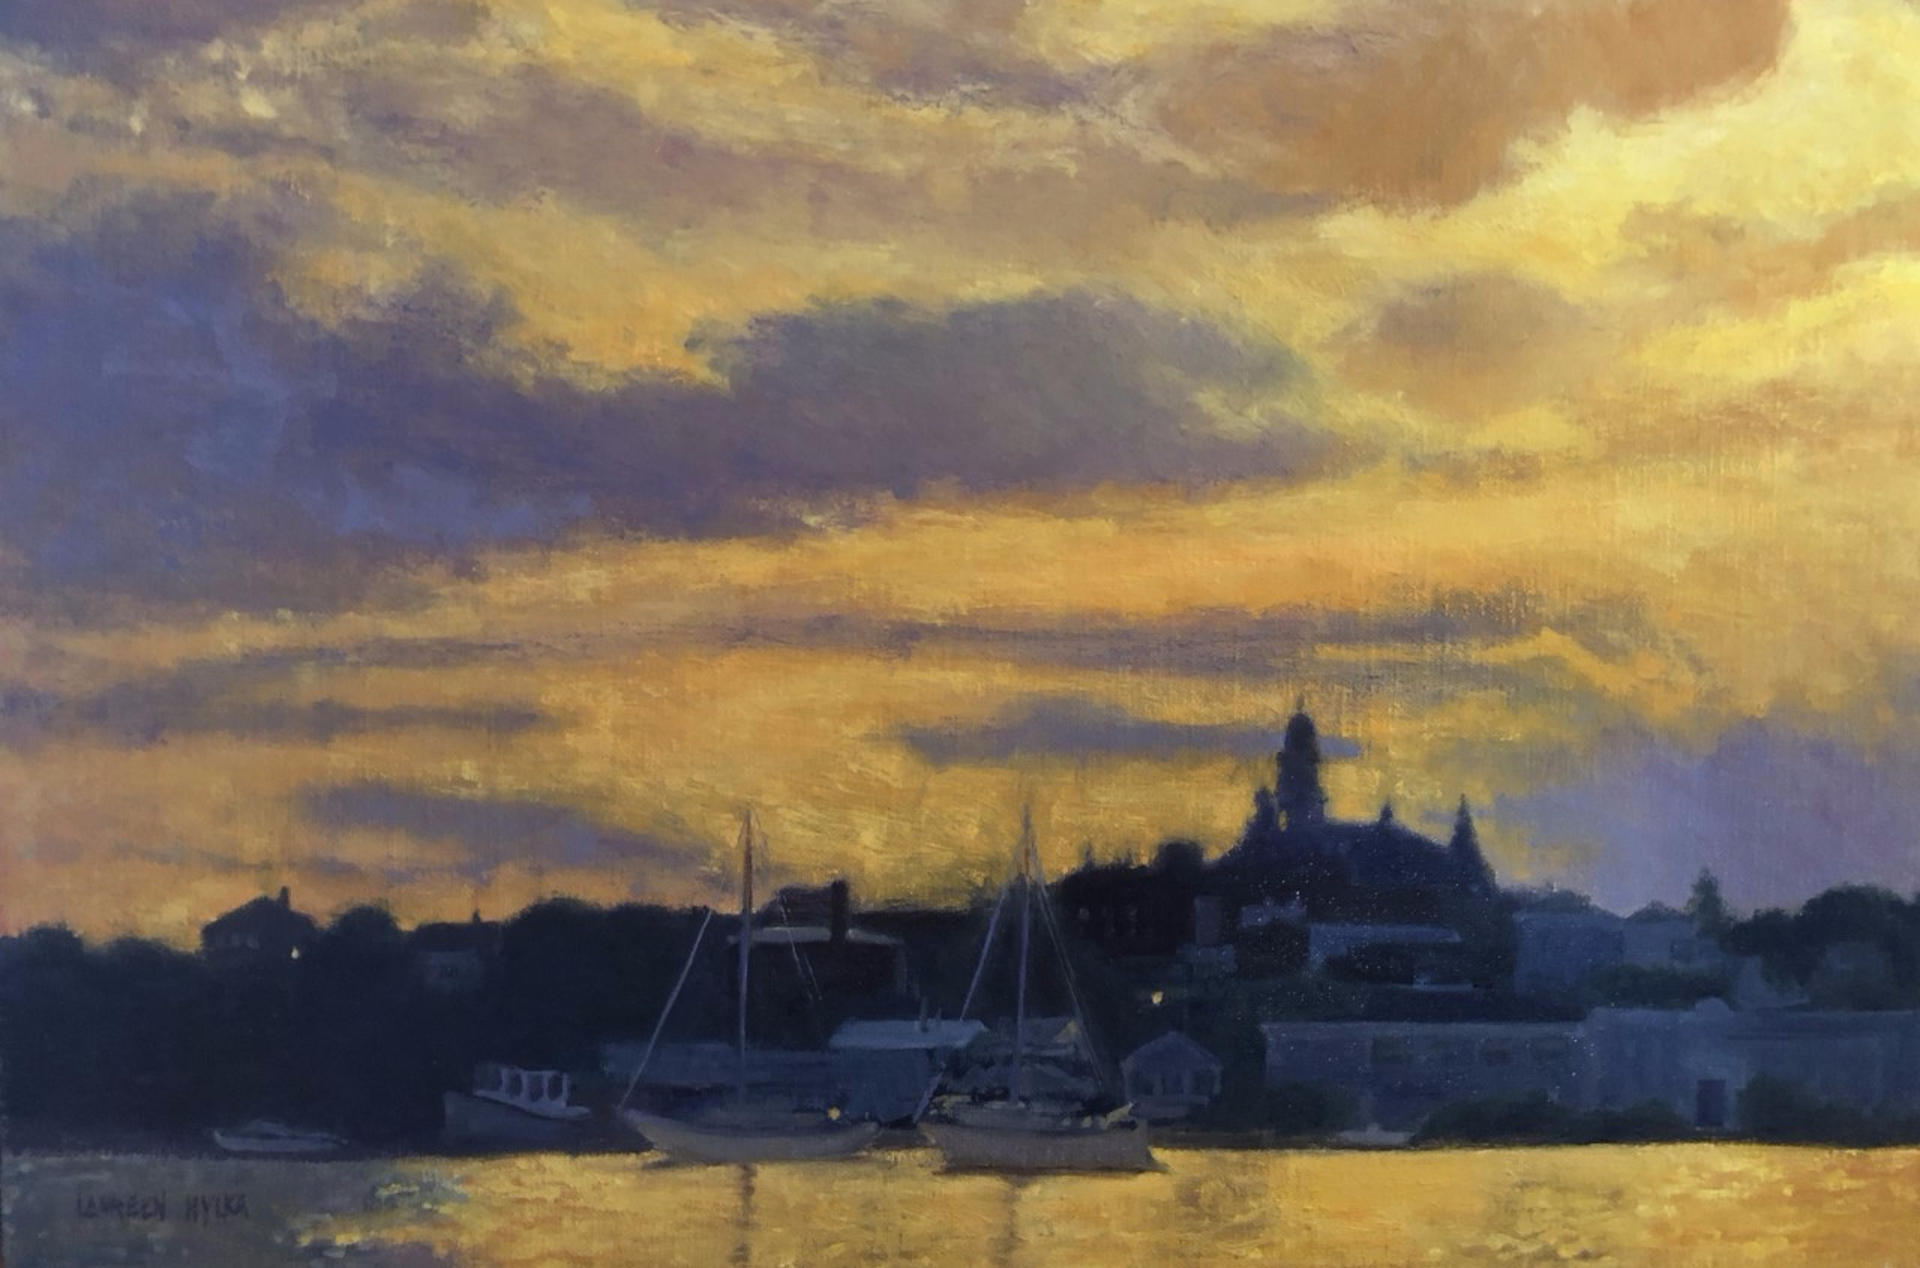 Sunset, Gloucester Harbor by Laureen Hylka